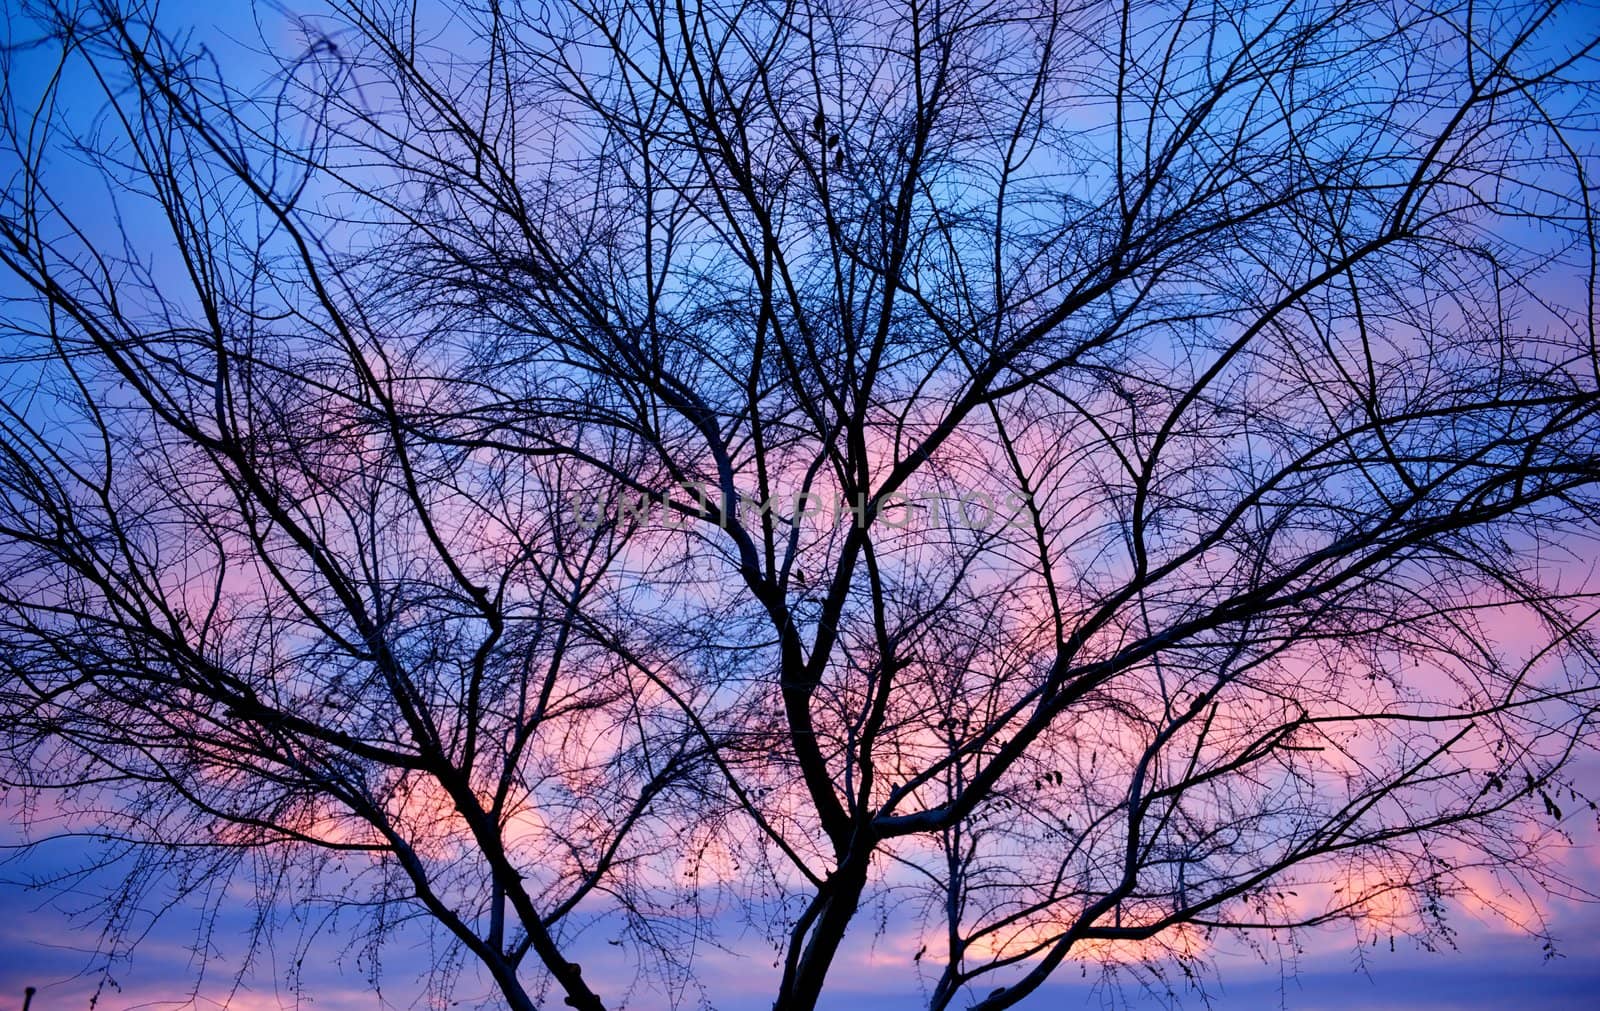 Barren Tree Silhouette by pixelsnap